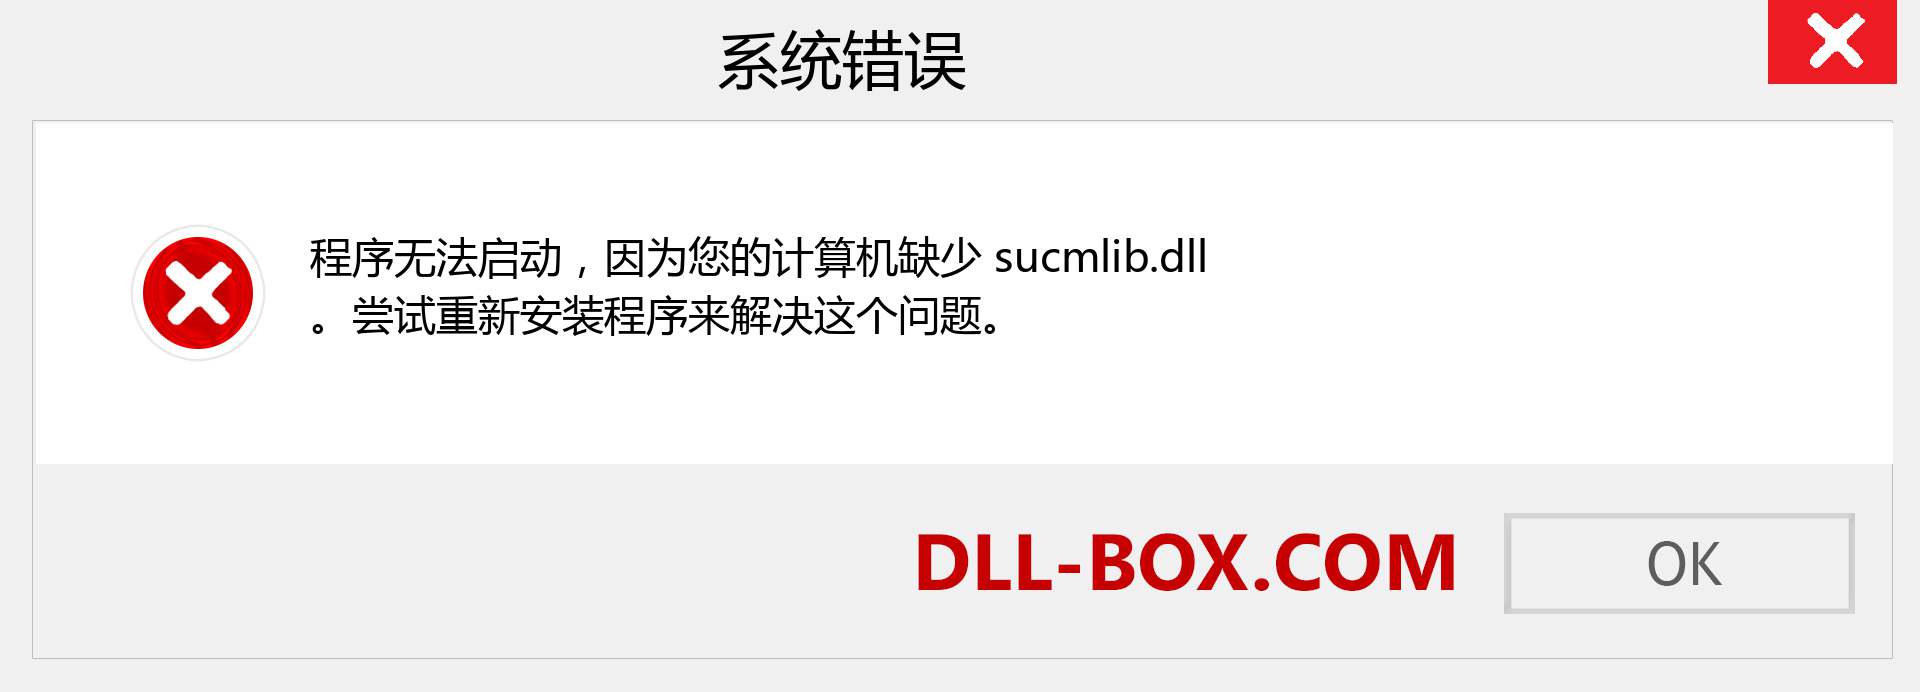 sucmlib.dll 文件丢失？。 适用于 Windows 7、8、10 的下载 - 修复 Windows、照片、图像上的 sucmlib dll 丢失错误